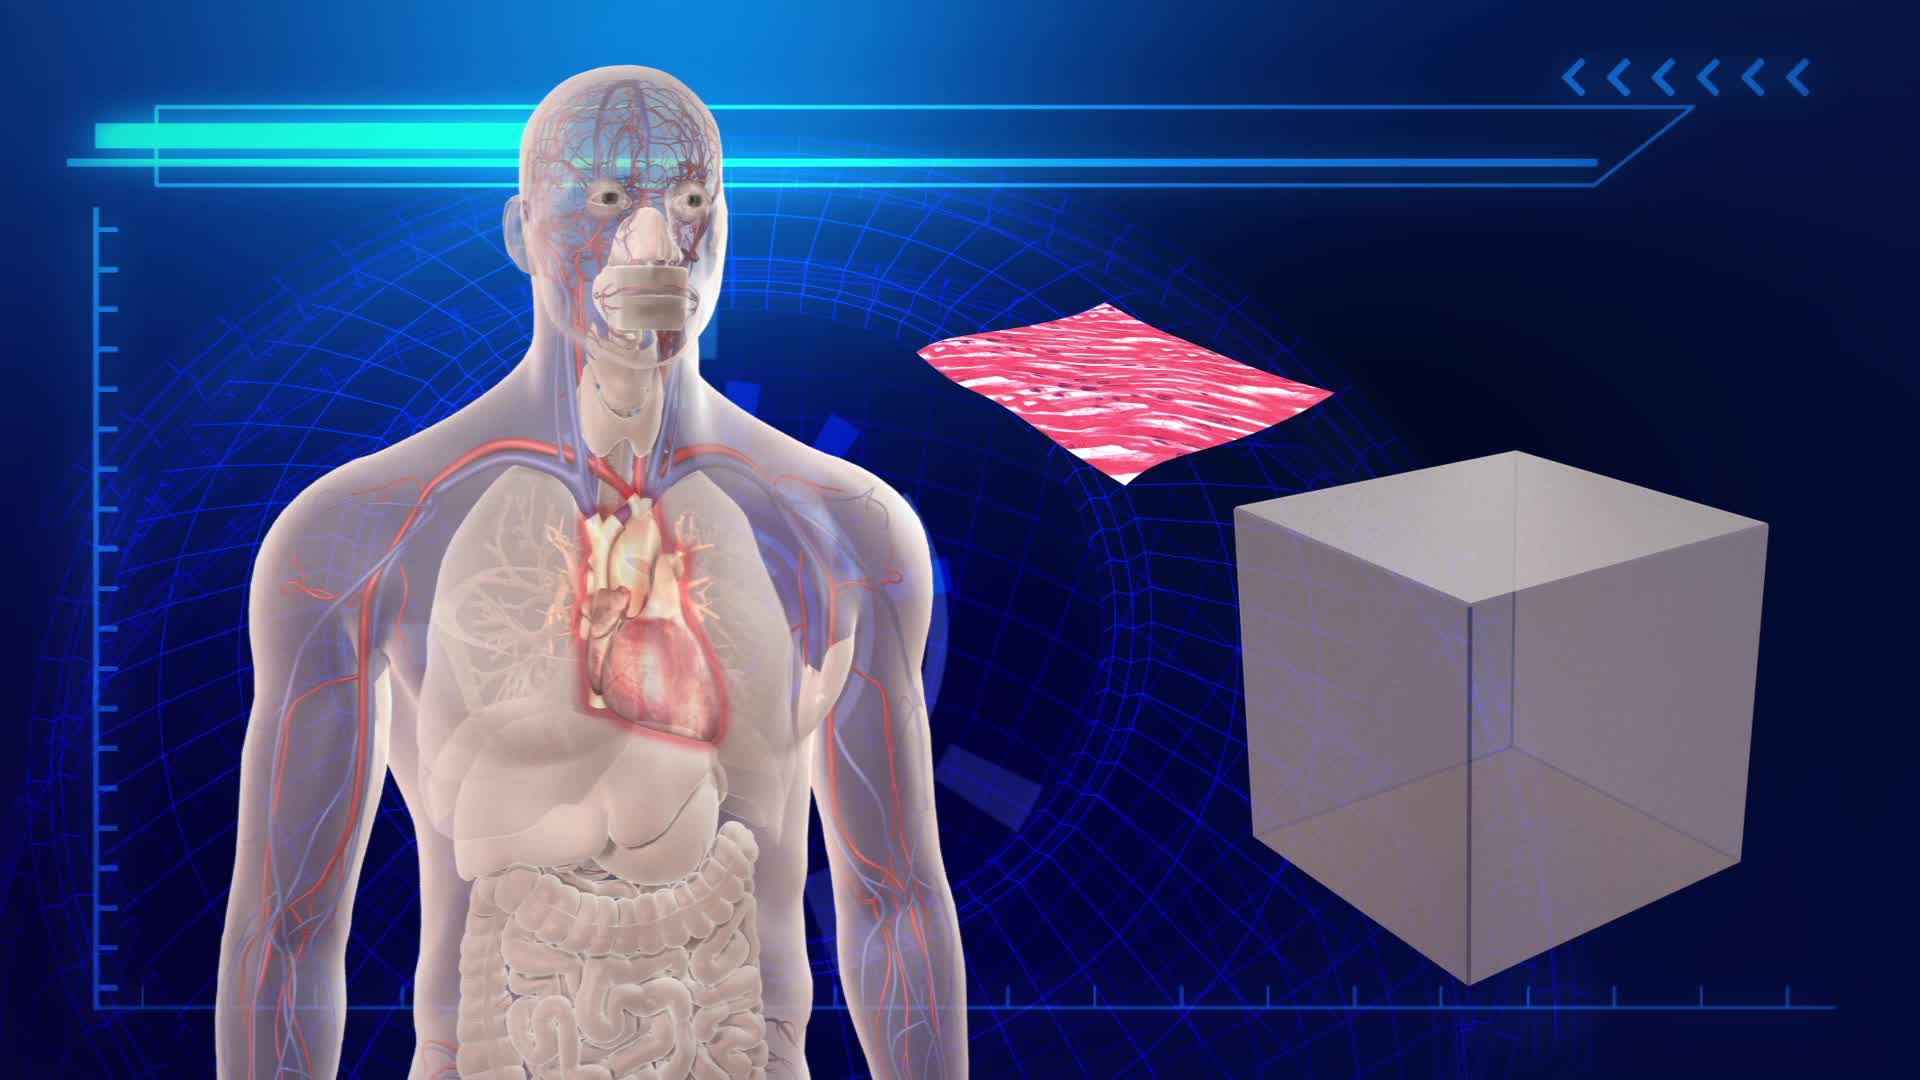 Σωτήρια λύση για τις μεταμοσχεύσεις δίνουν τα 3D τυπωμένα όργανα